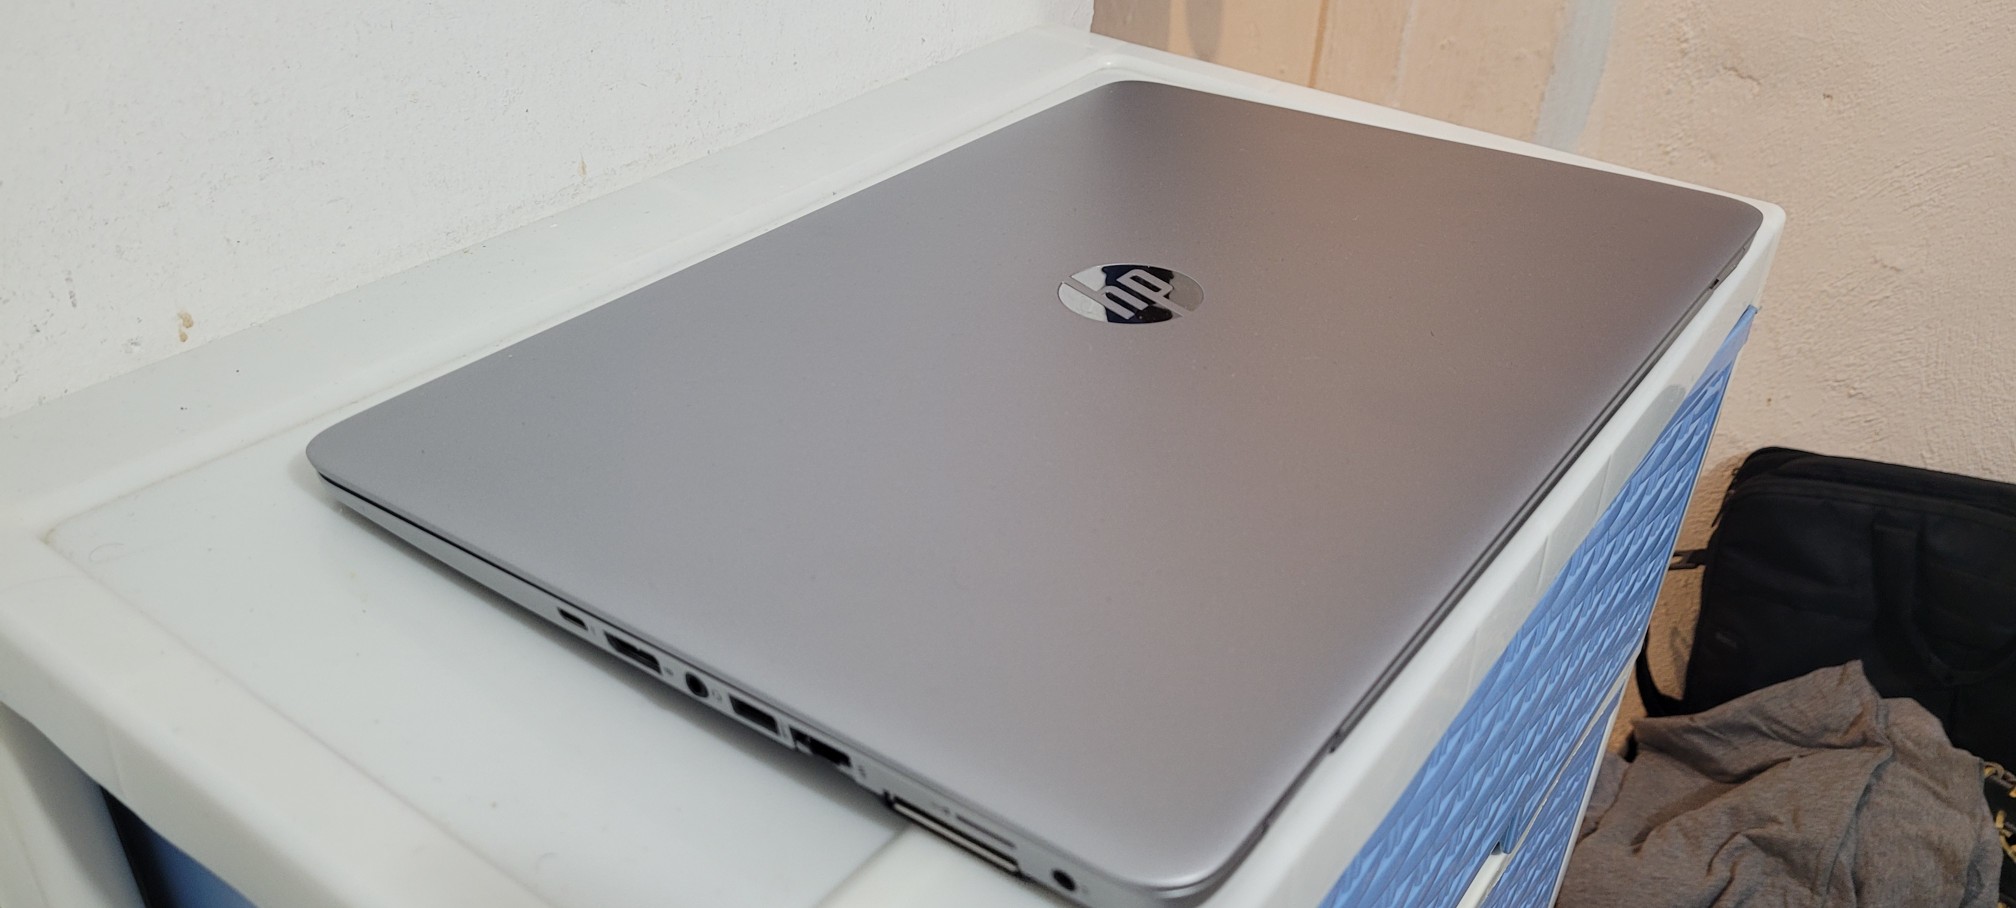 computadoras y laptops - laptop hp Slim 14 Pulg Core i5 6ta Gen Ram 8gb ddr4 Disco 128gb SSD Y 320gb 2